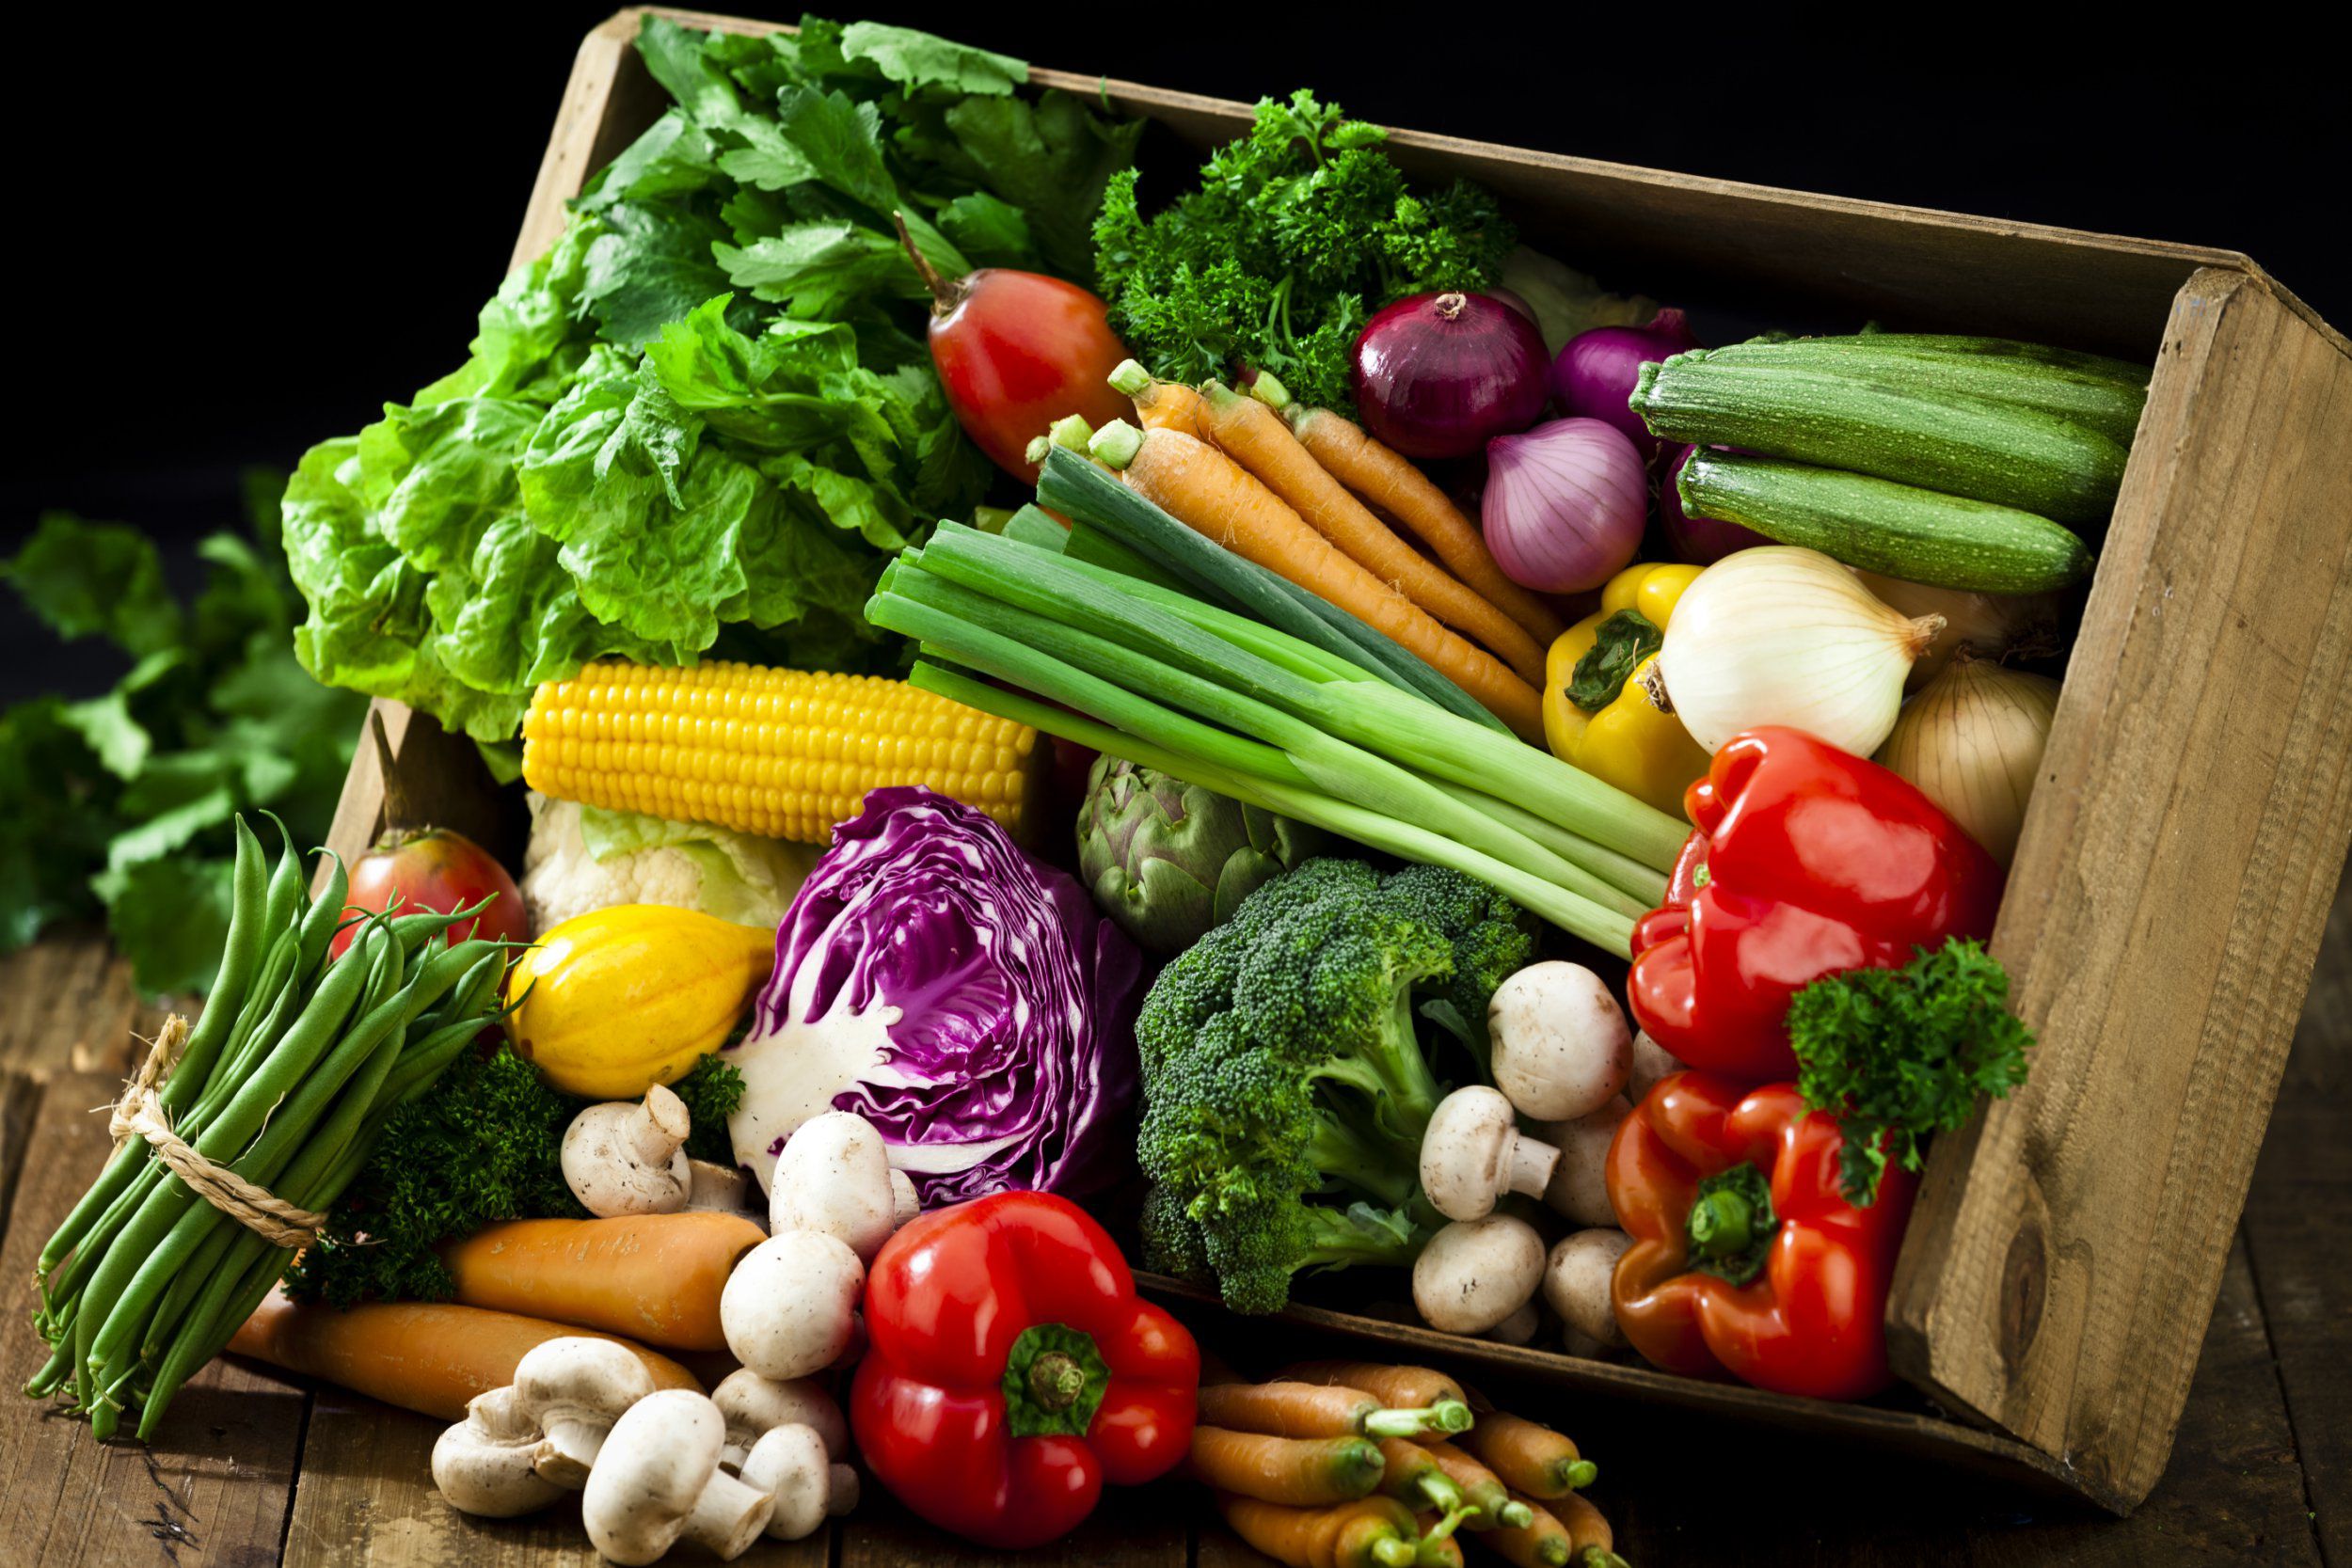 They like vegetables. Продукты овощи. Здоровая пища овощи. Вегетарианство. Здоровое вегетарианское питание.